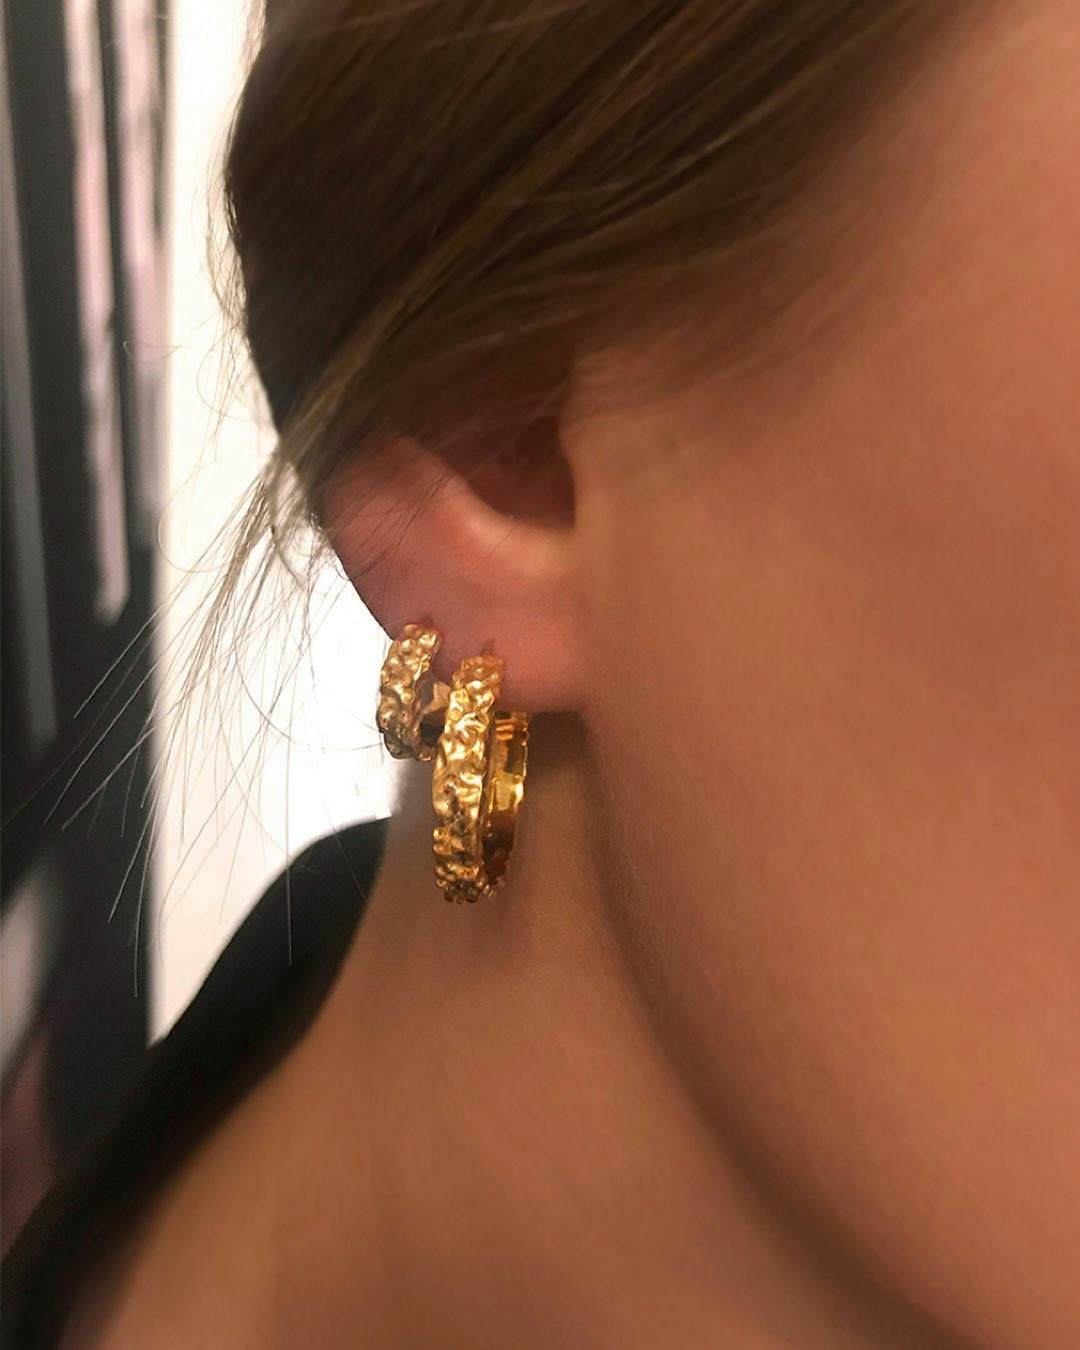 Aio Small earrings fra Maanesten i Sølv Sterling 925